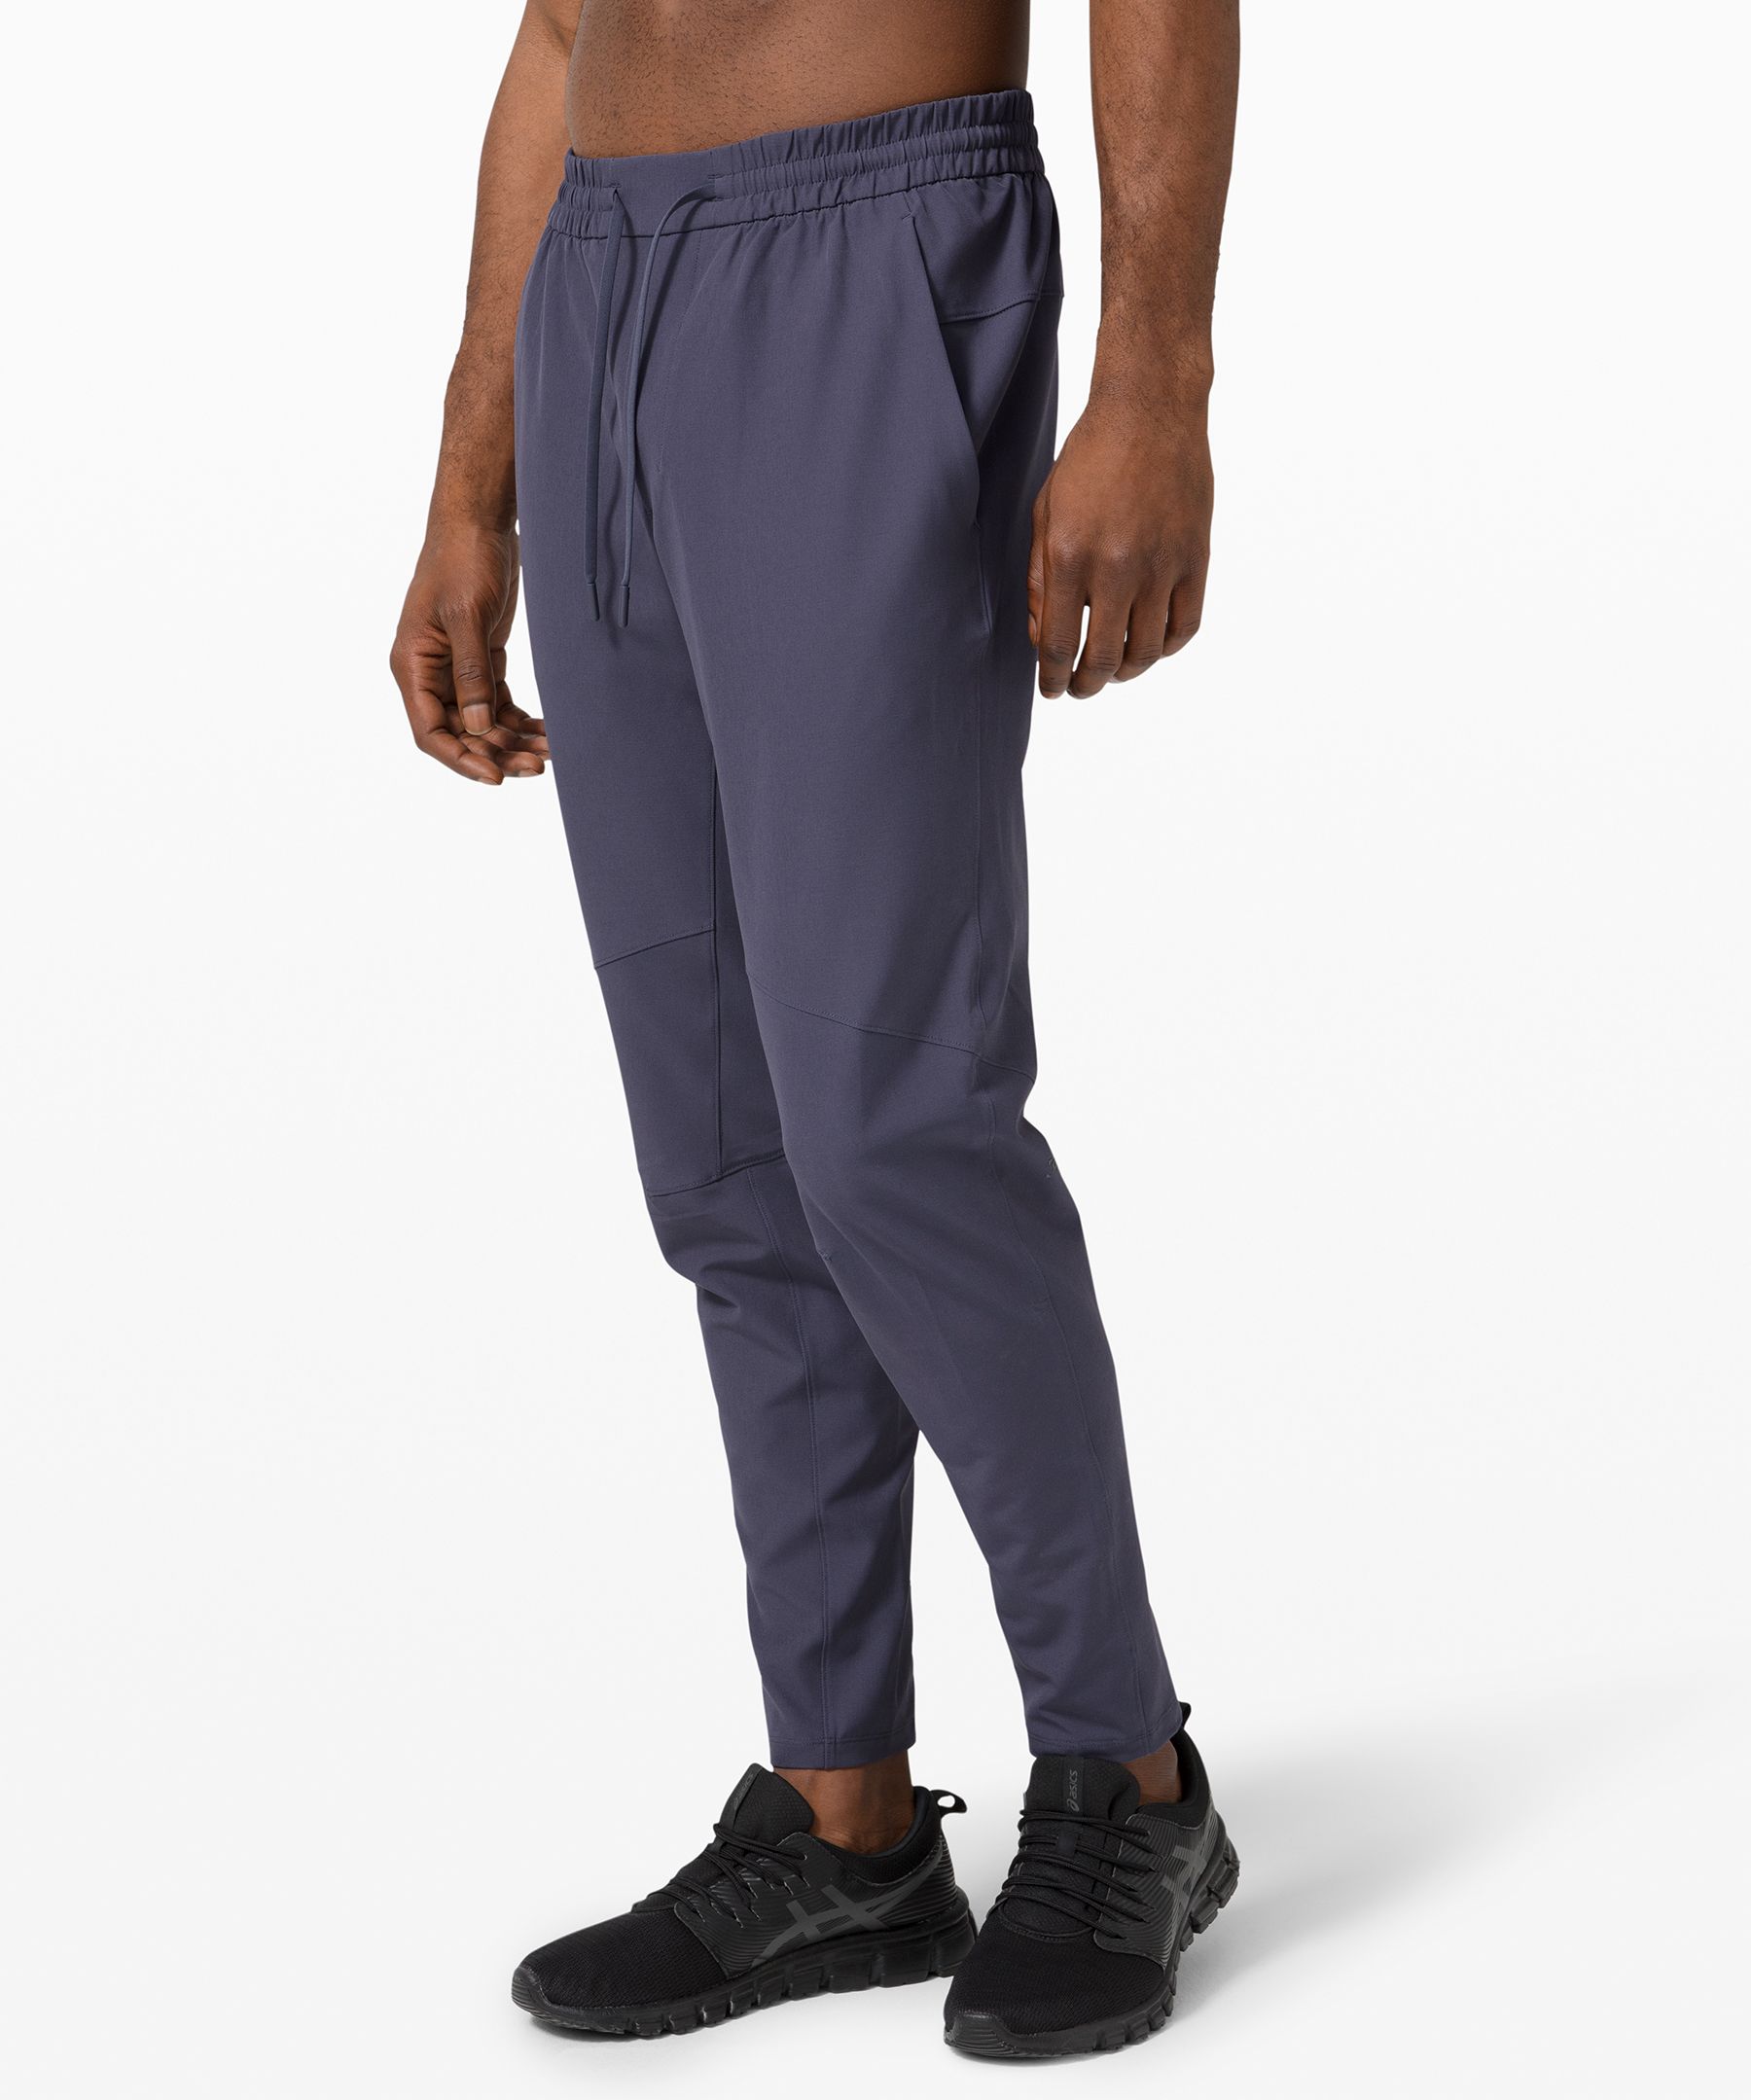 lululemon lightweight pants